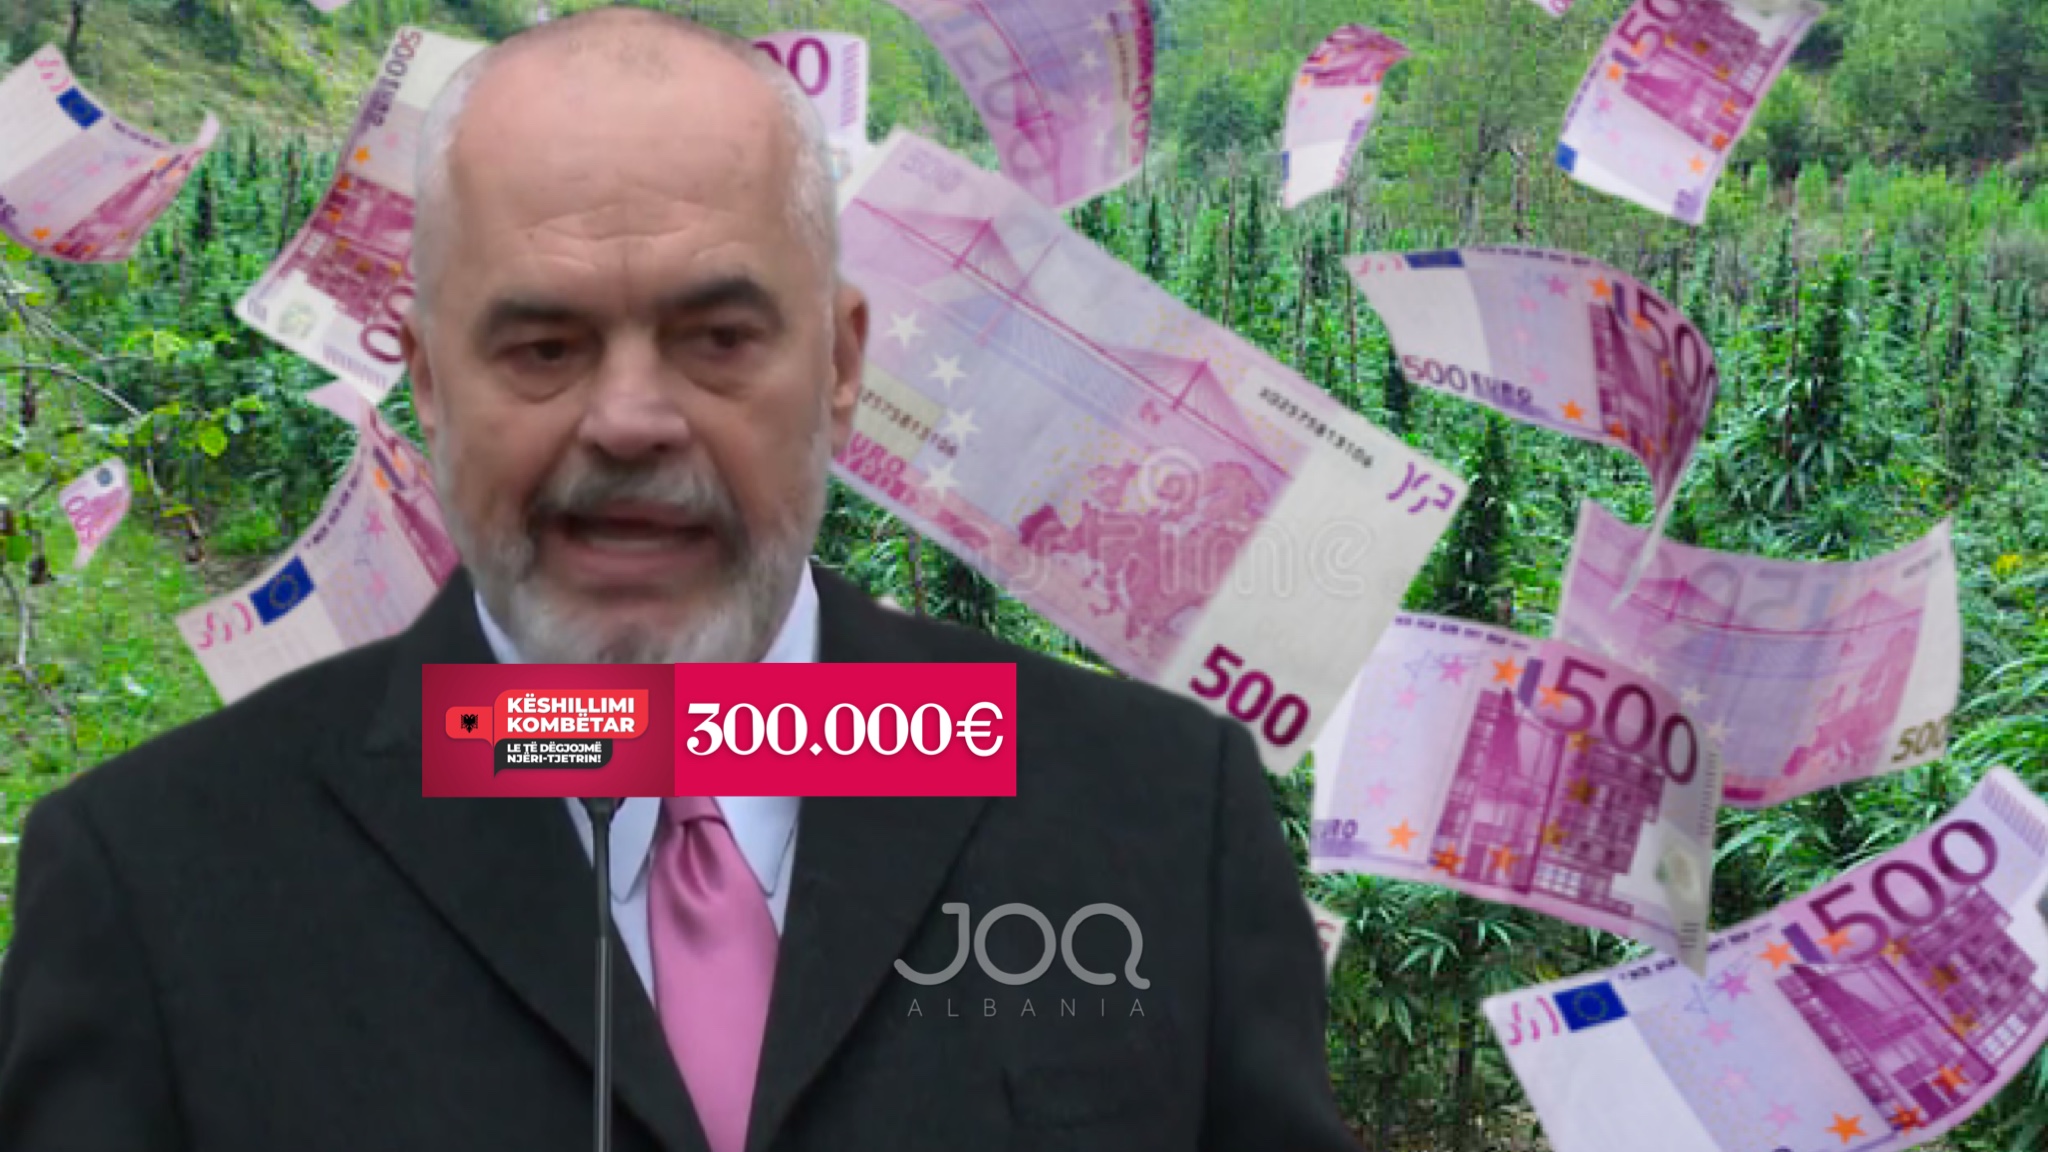 KËSHILLIMI KOMBËTAR/ Dështimi i Ramës i kushtoi shqiptarëve 300 MIJË €, kush oligark përfiton nga legalizimi i kanabisit?